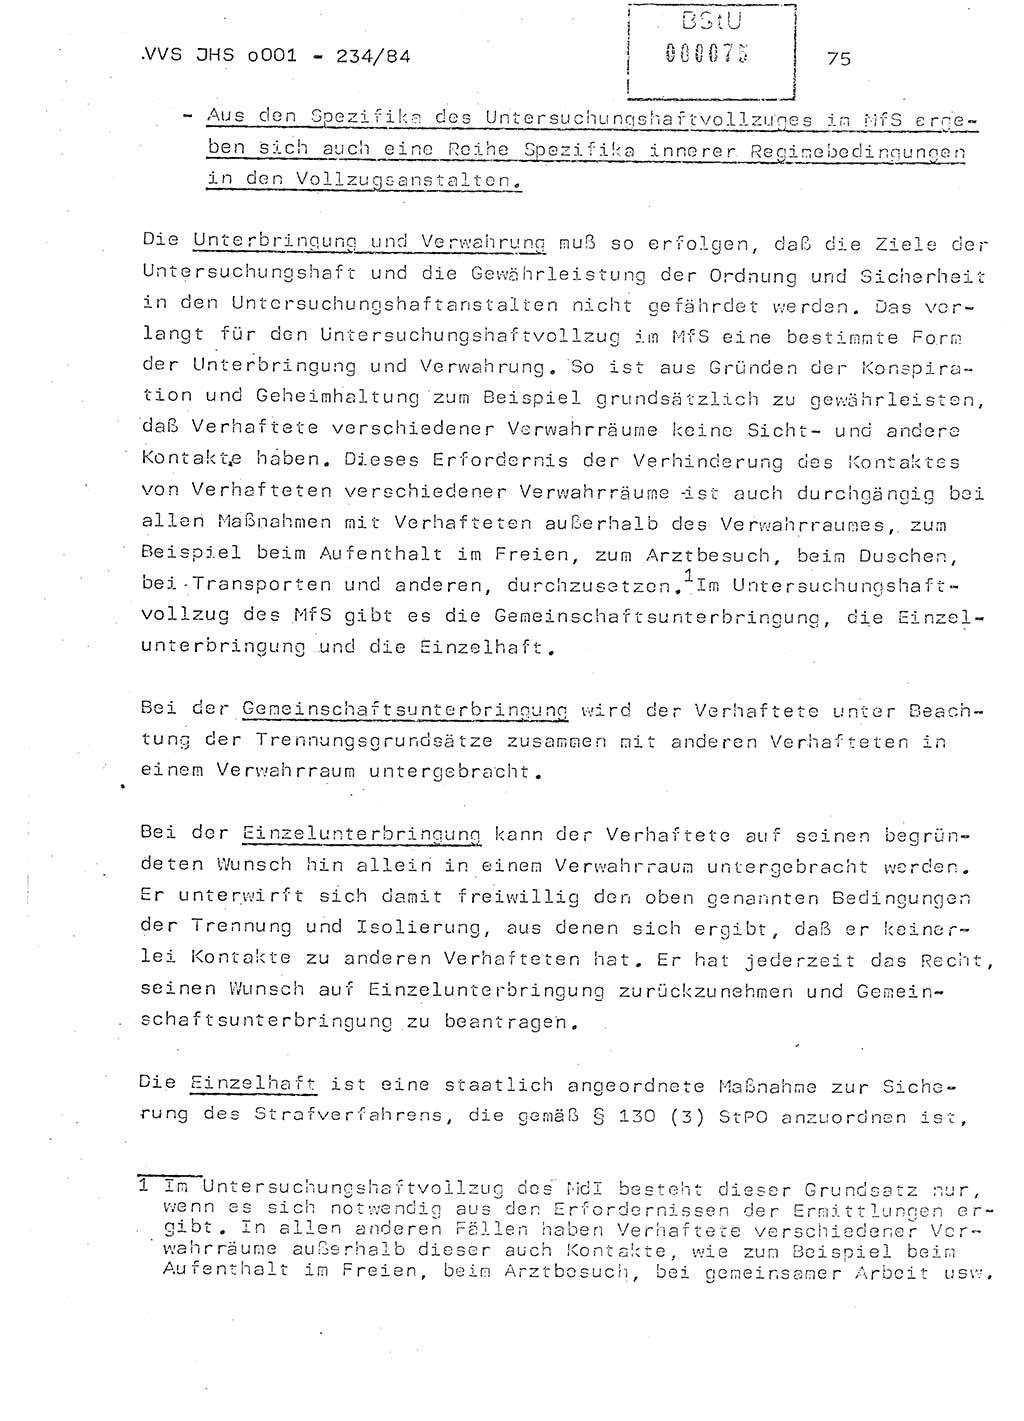 Dissertation Oberst Siegfried Rataizick (Abt. ⅩⅣ), Oberstleutnant Volkmar Heinz (Abt. ⅩⅣ), Oberstleutnant Werner Stein (HA Ⅸ), Hauptmann Heinz Conrad (JHS), Ministerium für Staatssicherheit (MfS) [Deutsche Demokratische Republik (DDR)], Juristische Hochschule (JHS), Vertrauliche Verschlußsache (VVS) o001-234/84, Potsdam 1984, Seite 75 (Diss. MfS DDR JHS VVS o001-234/84 1984, S. 75)